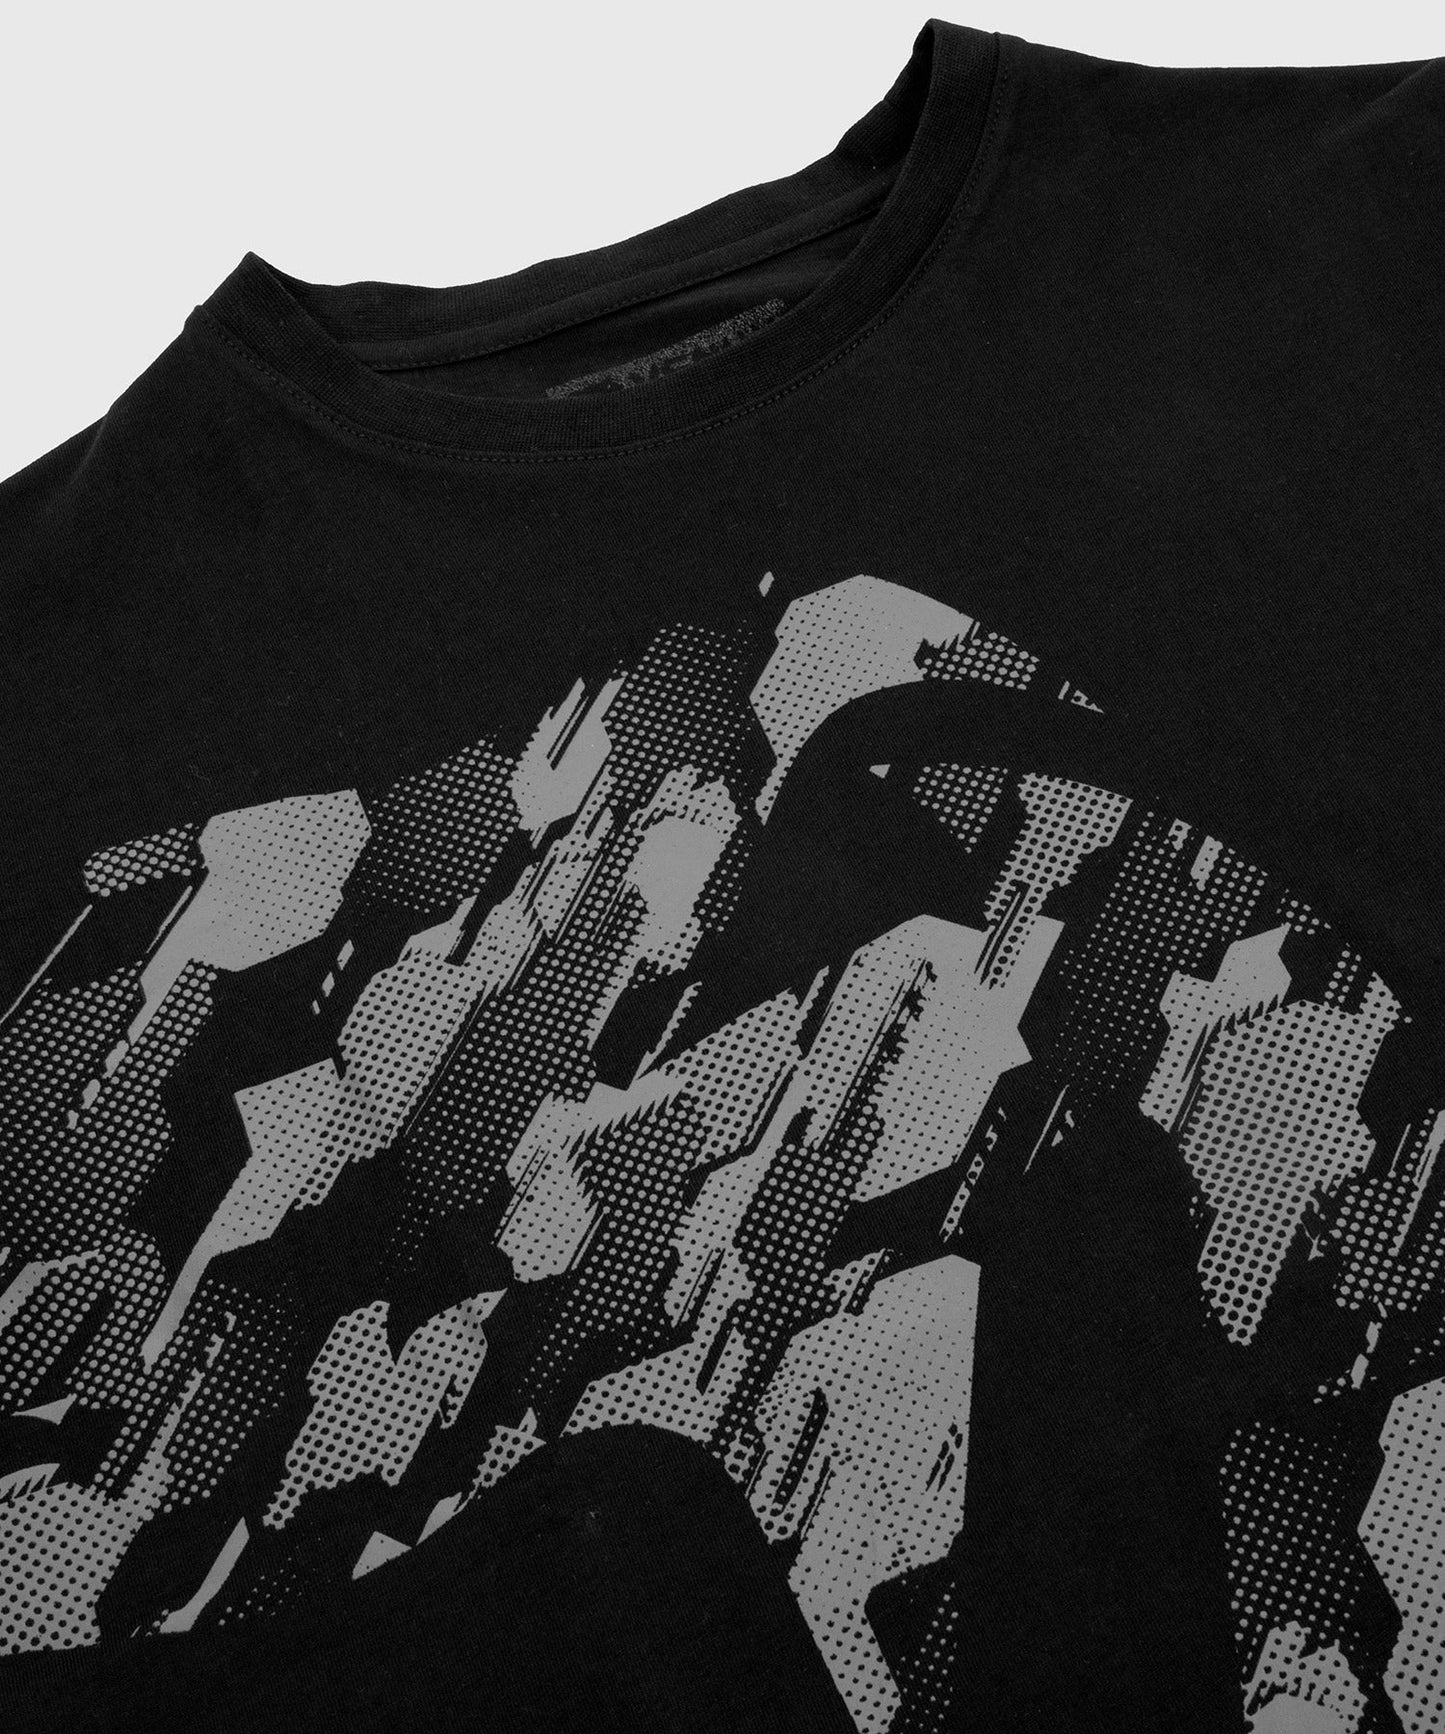 Venum Giant Camo 2.0 T-shirt - Black/Urban Camo